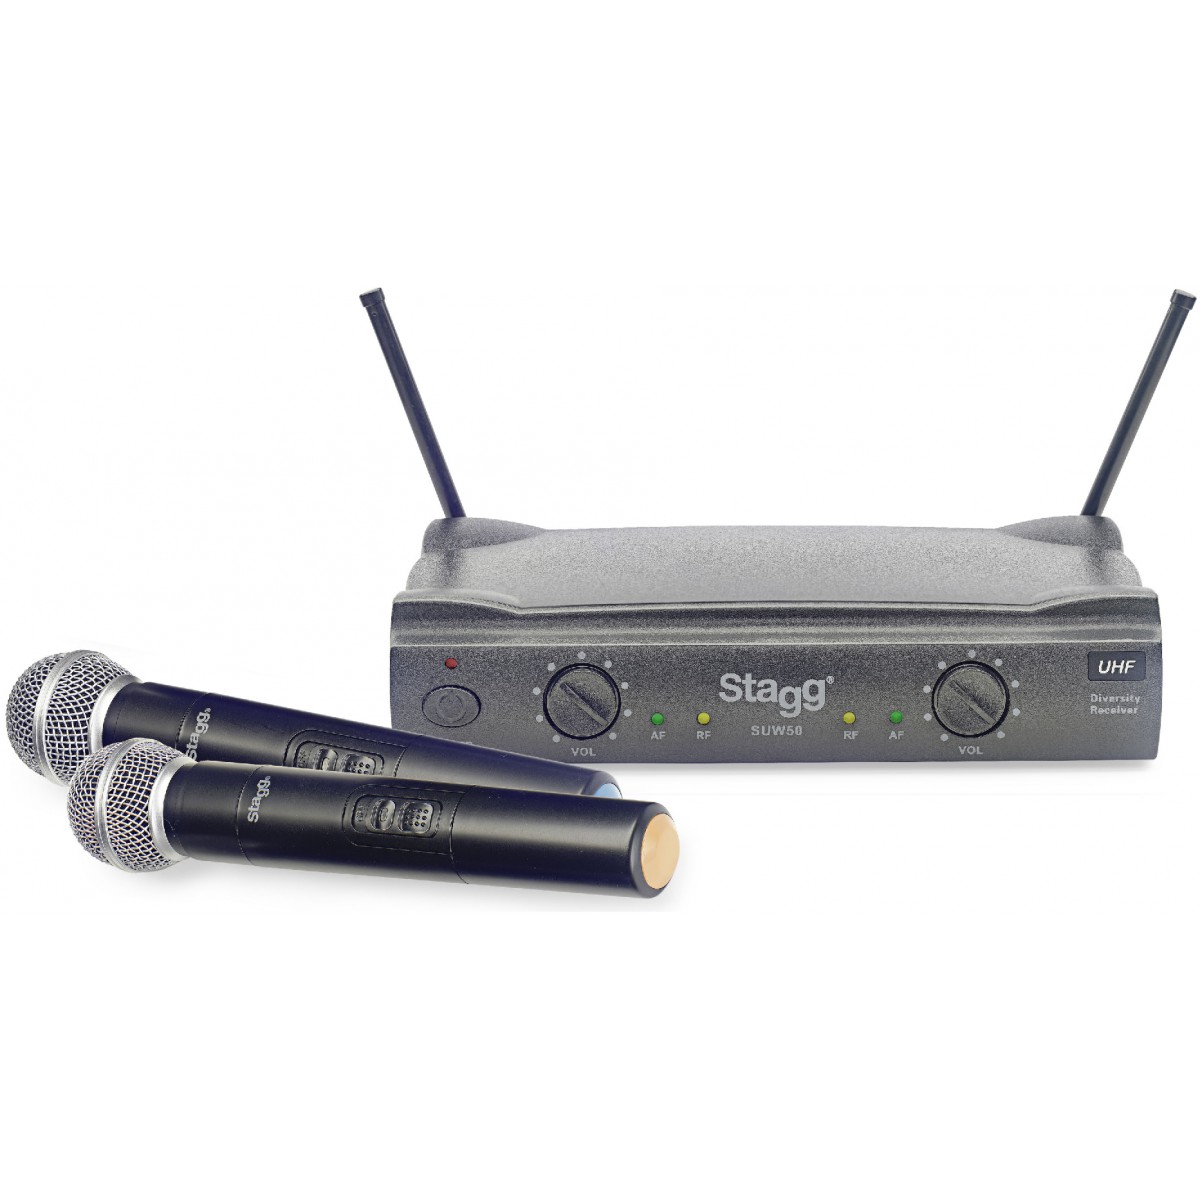 Stagg SUW 50 MM EG, UHF mikrofonní set 2 kanálový, 2x ruční mikrofon